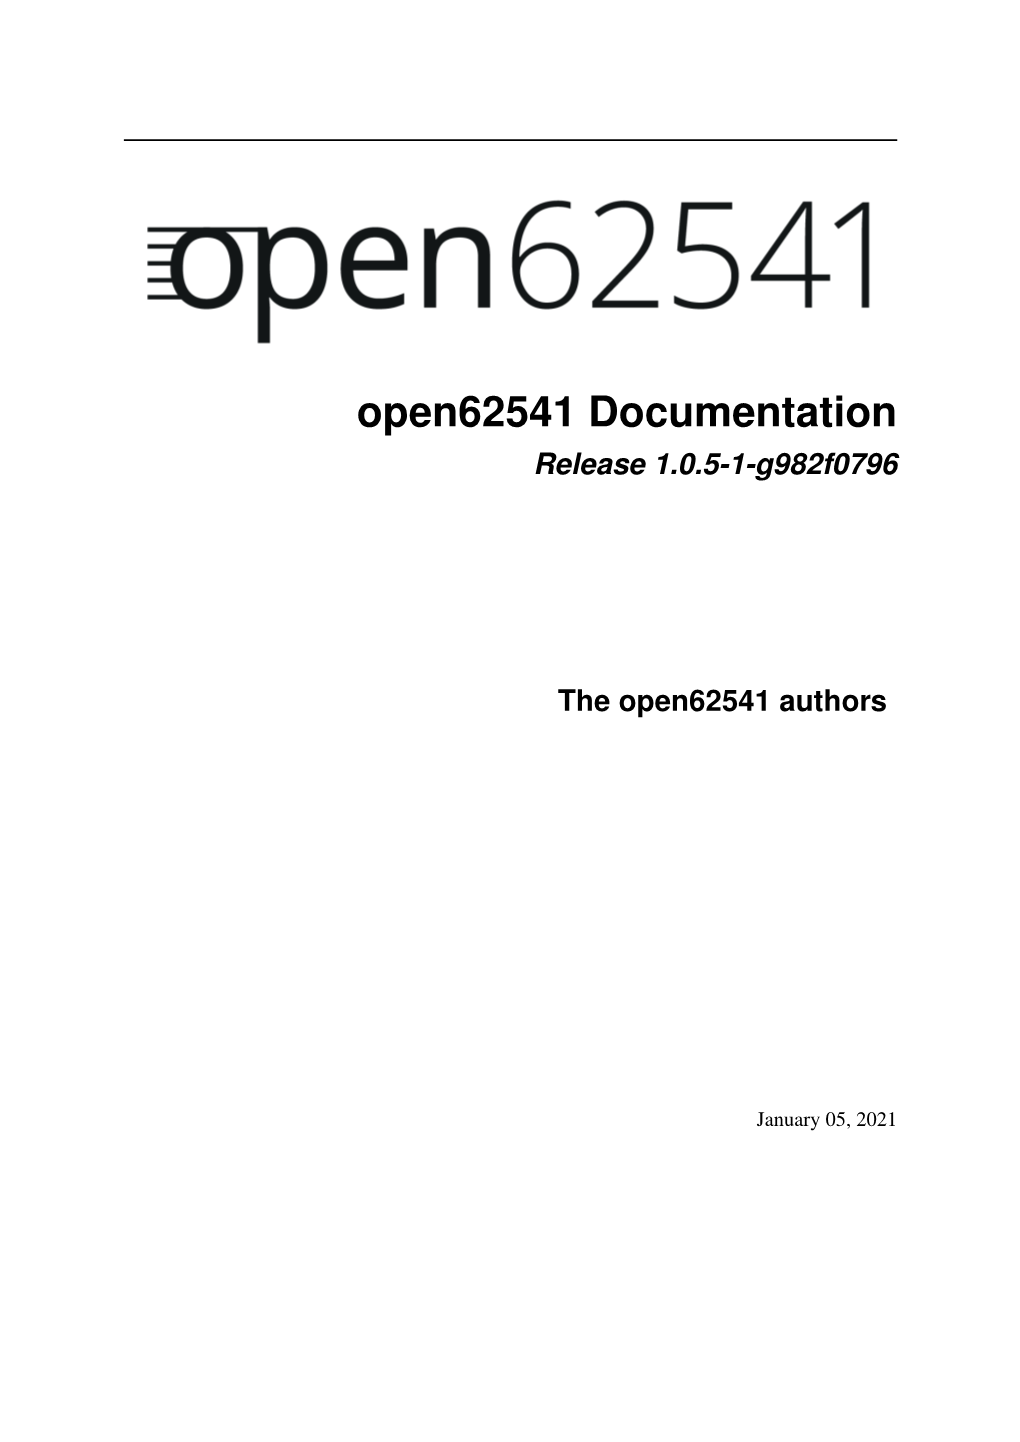 Open62541 Documentation Release 1.0.5-1-G982f0796